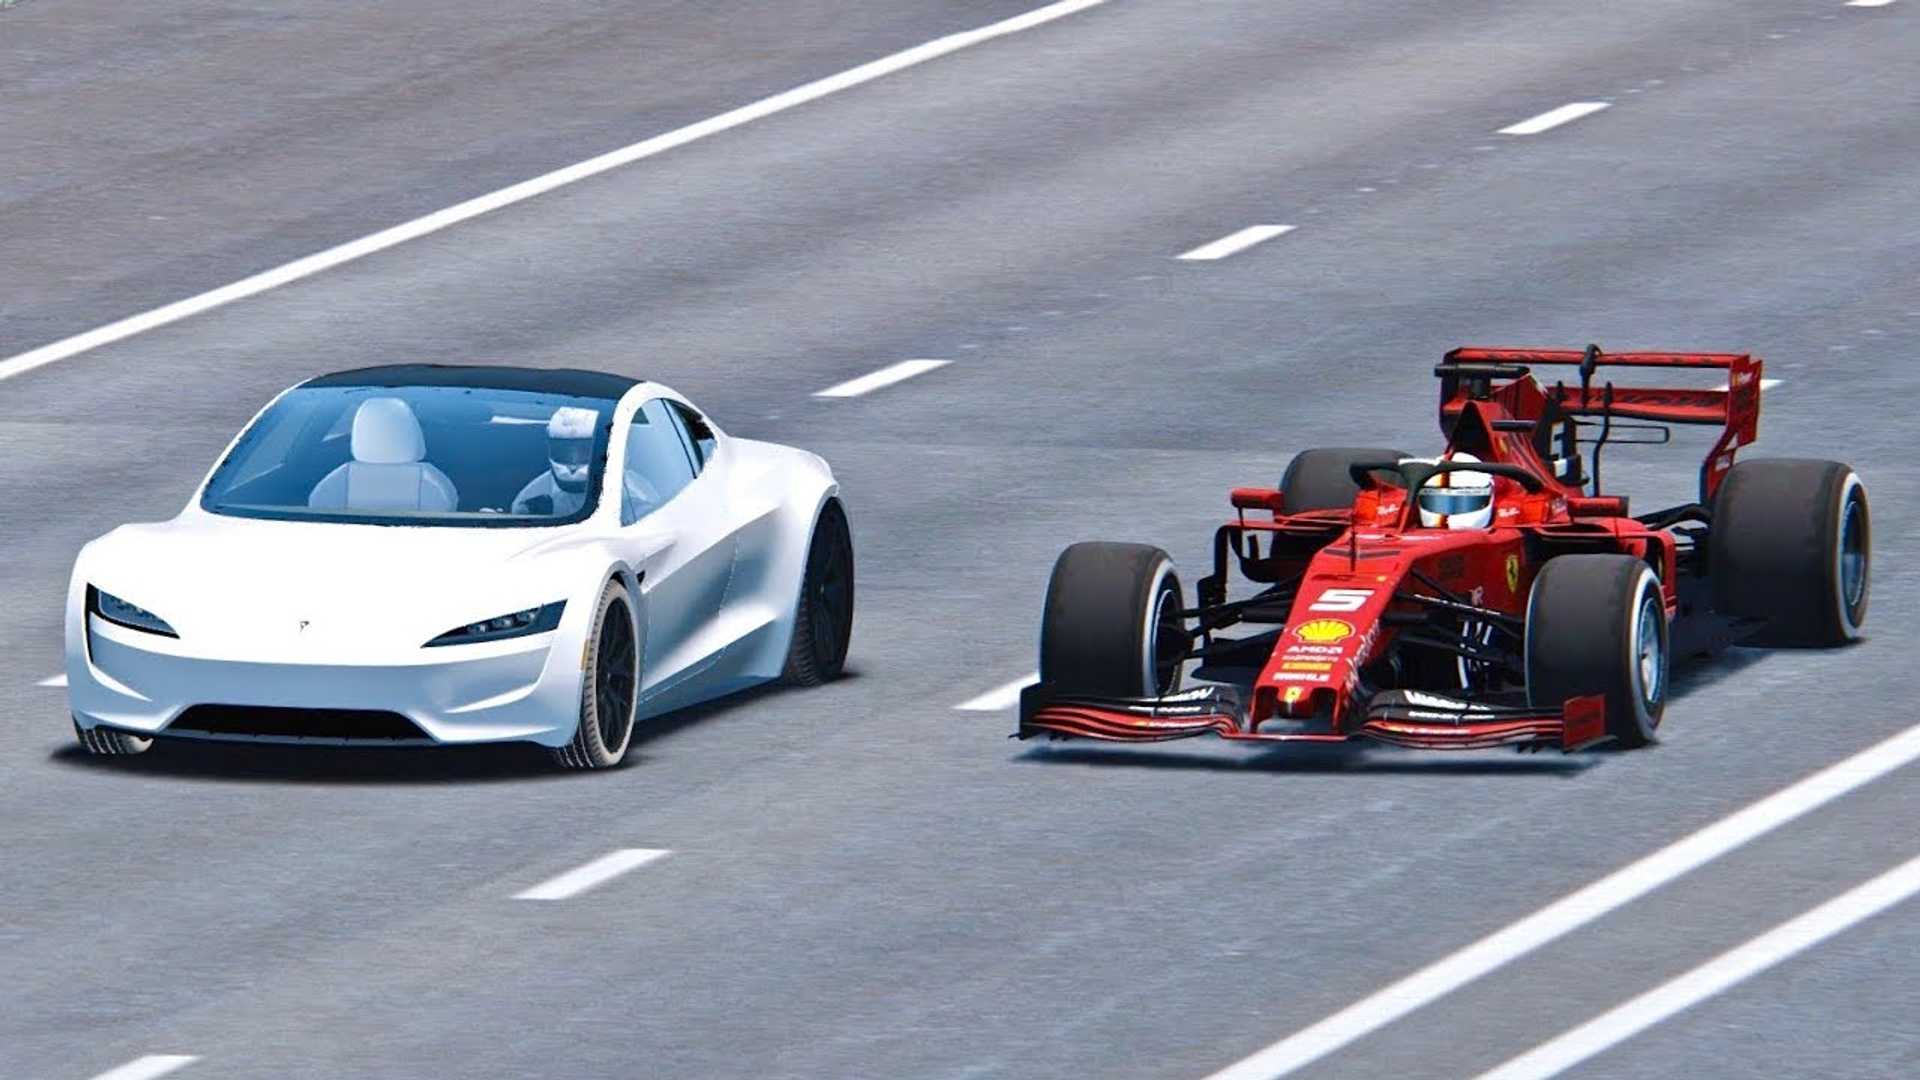 Каков разгон болида «Формулы-1» до 100 км/ч? А до 300 км/ч? Есть машина, которая делает это быстрее?